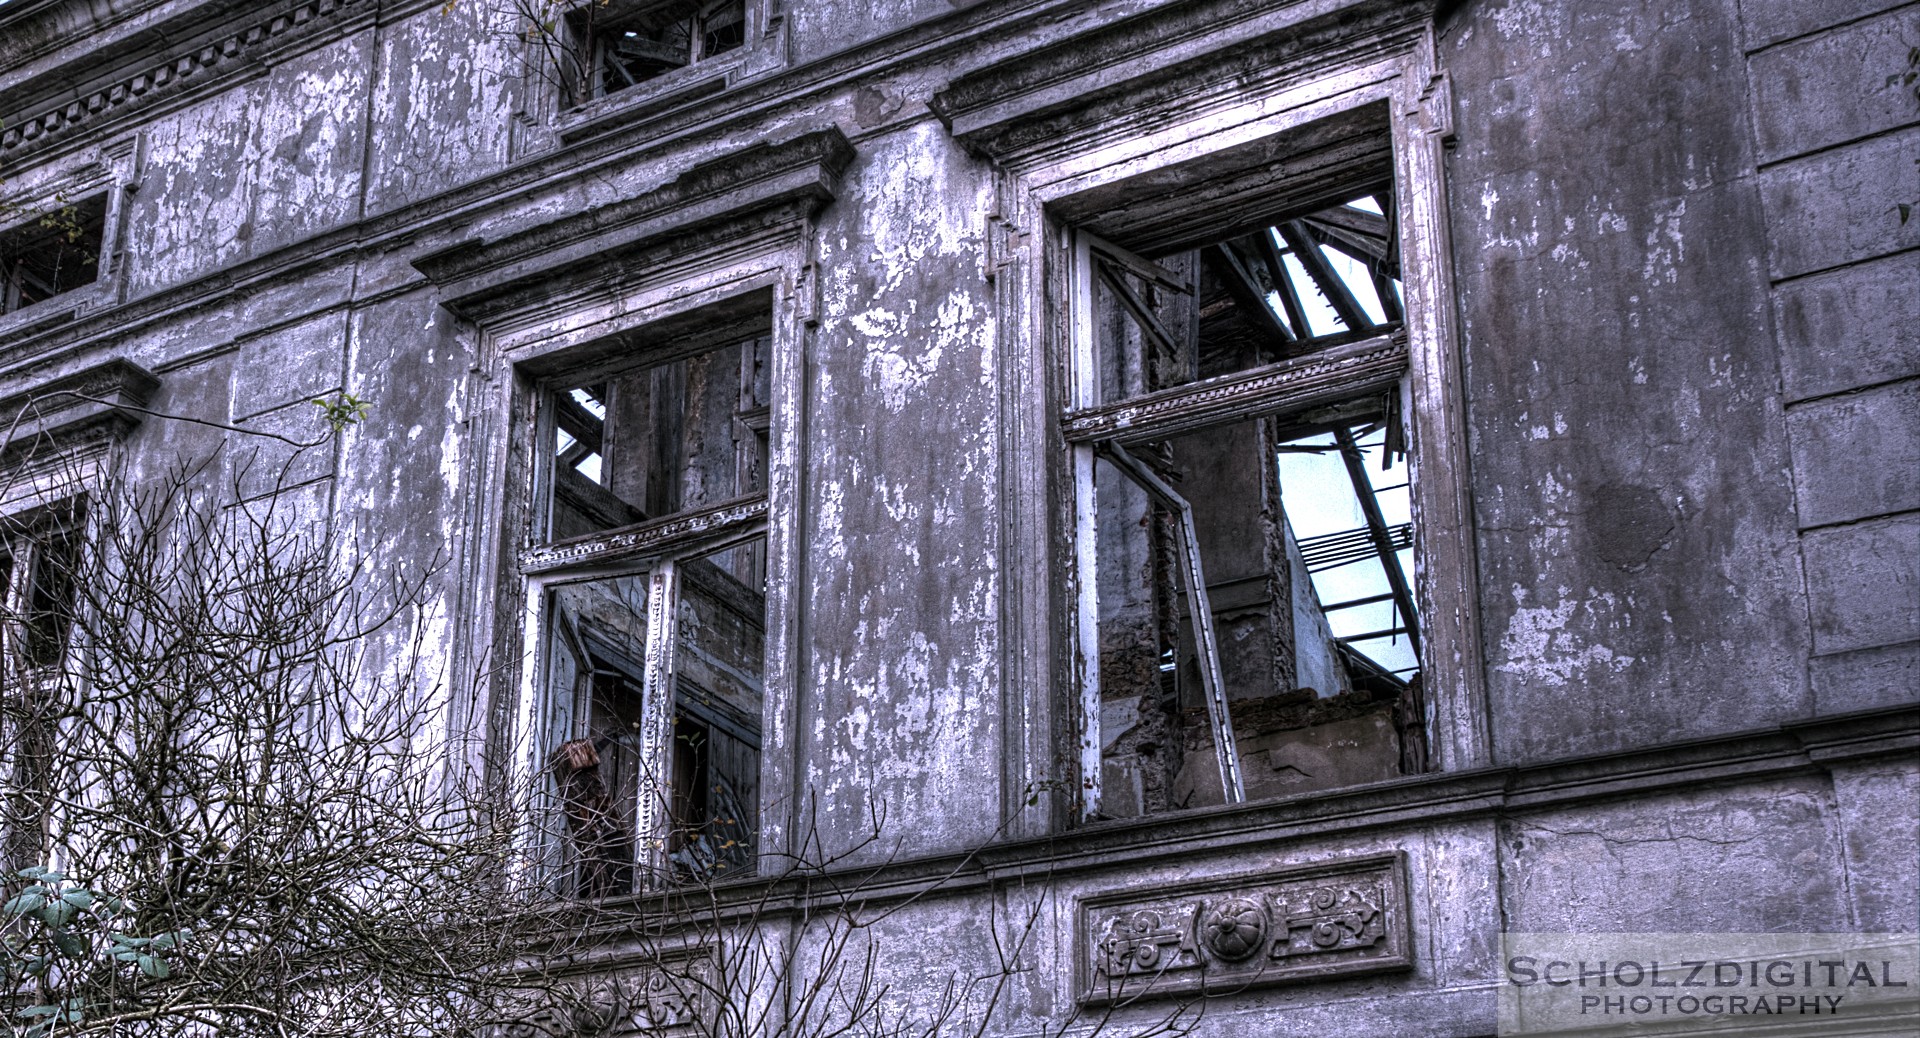 Fenster eines alten verlassenen Gebäudes